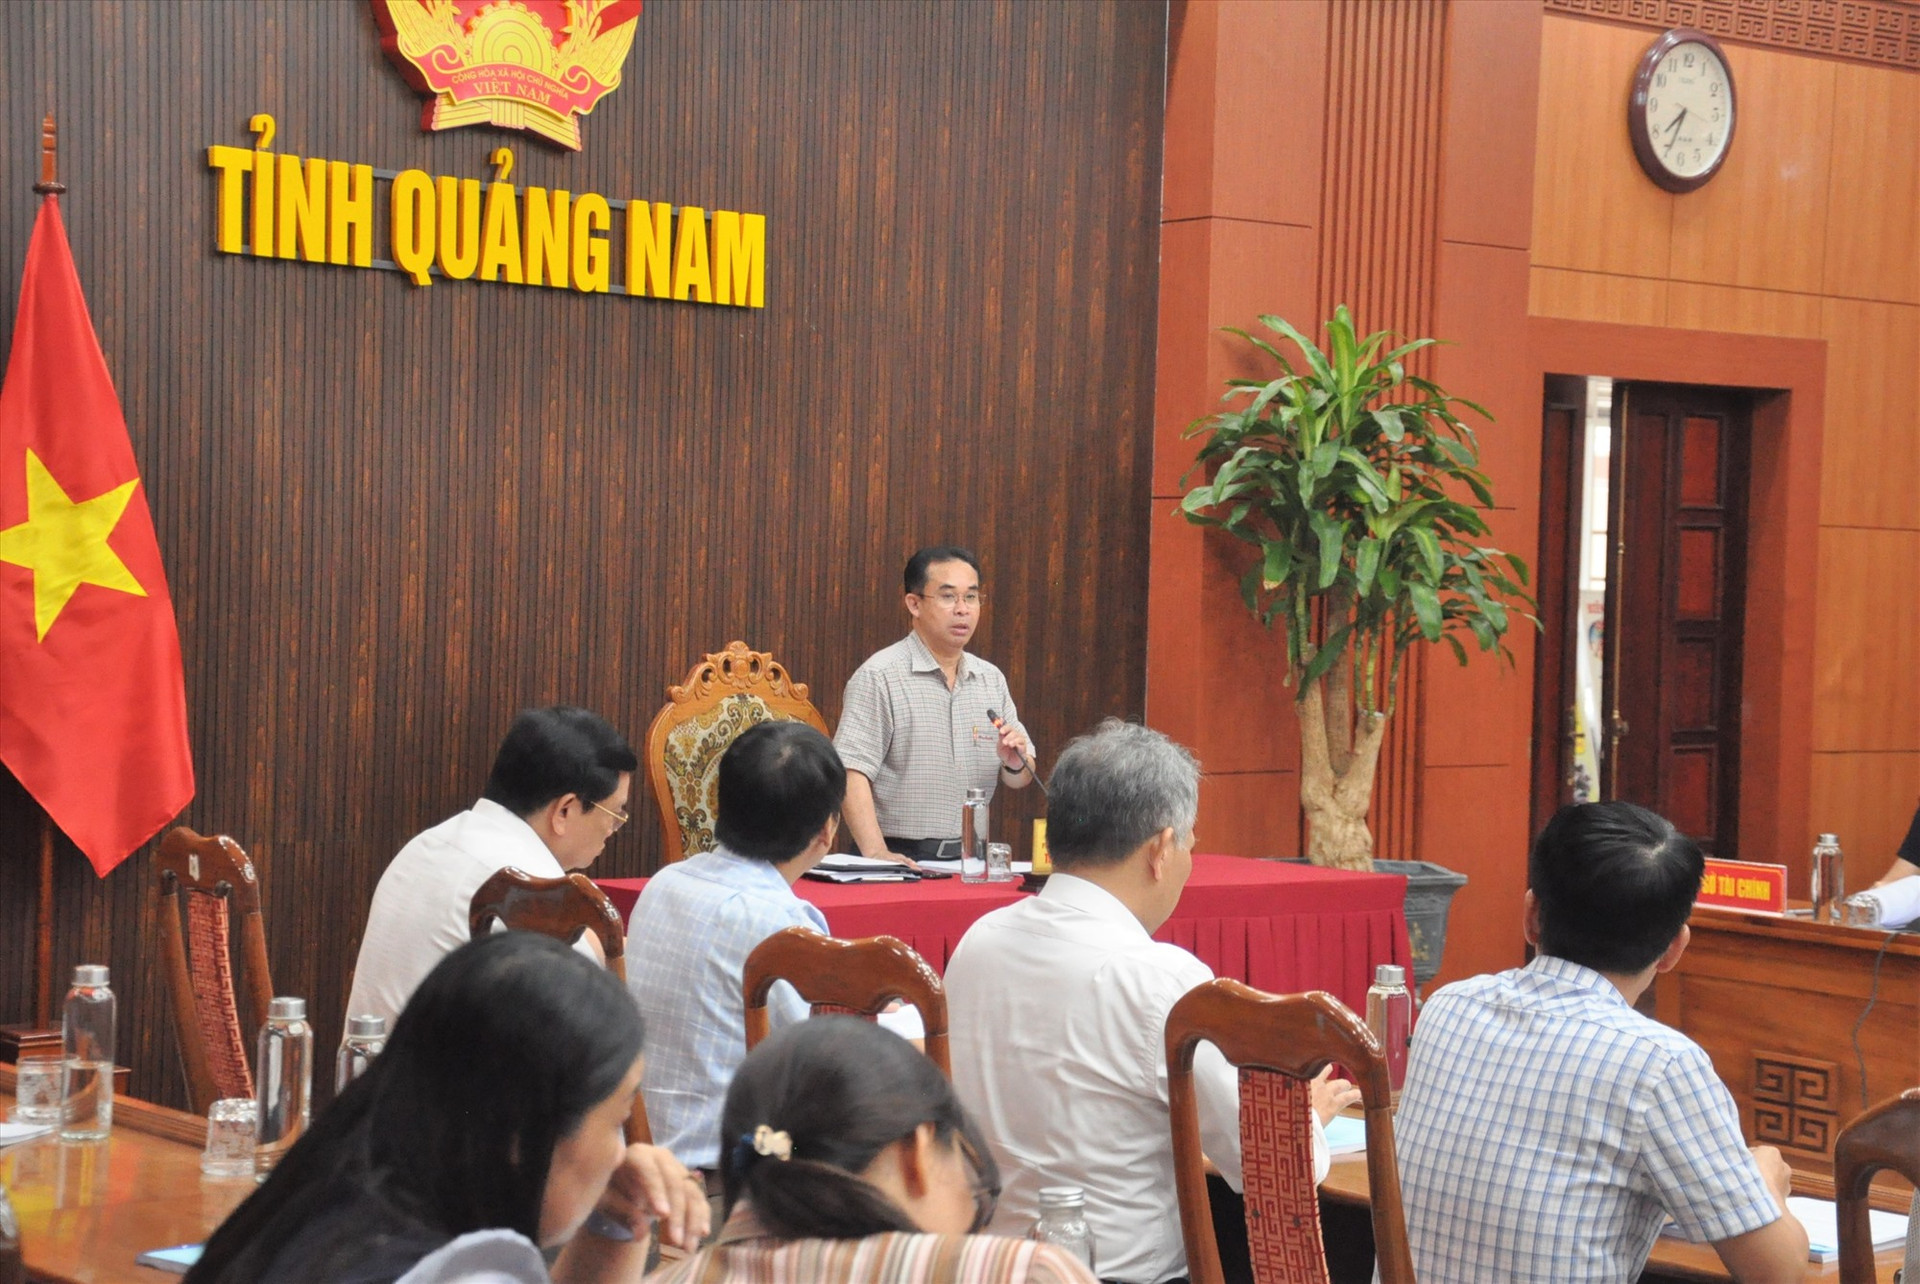 Phó Chủ tịch UBND tỉnh Trần Anh Tuấn yêu cầu các thành viên Ban chỉ đạo quan tâm chỉ đạo, tổ chức kỳ thi tốt nghiệp THPT đạt kết quả. Ảnh: X.P